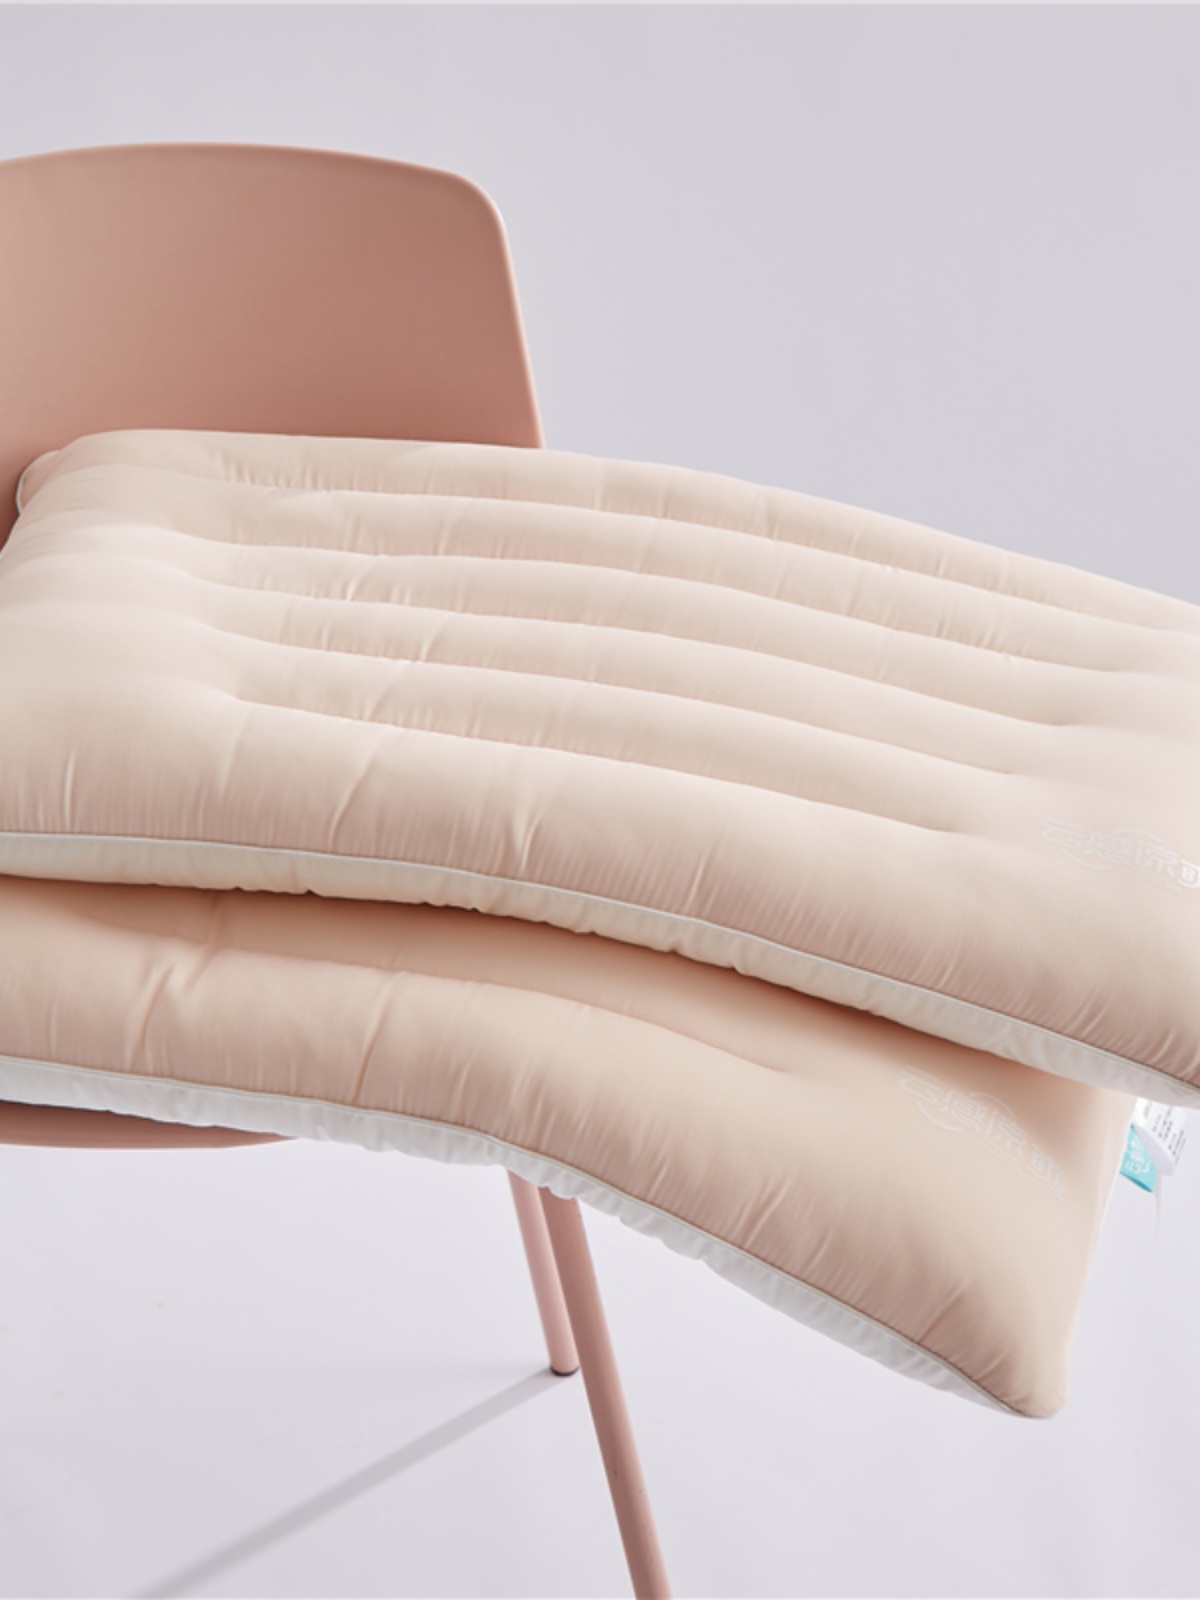 雲感涼爽防蟎乳膠枕芯分區設計舒適護頸單人單隻更換方便